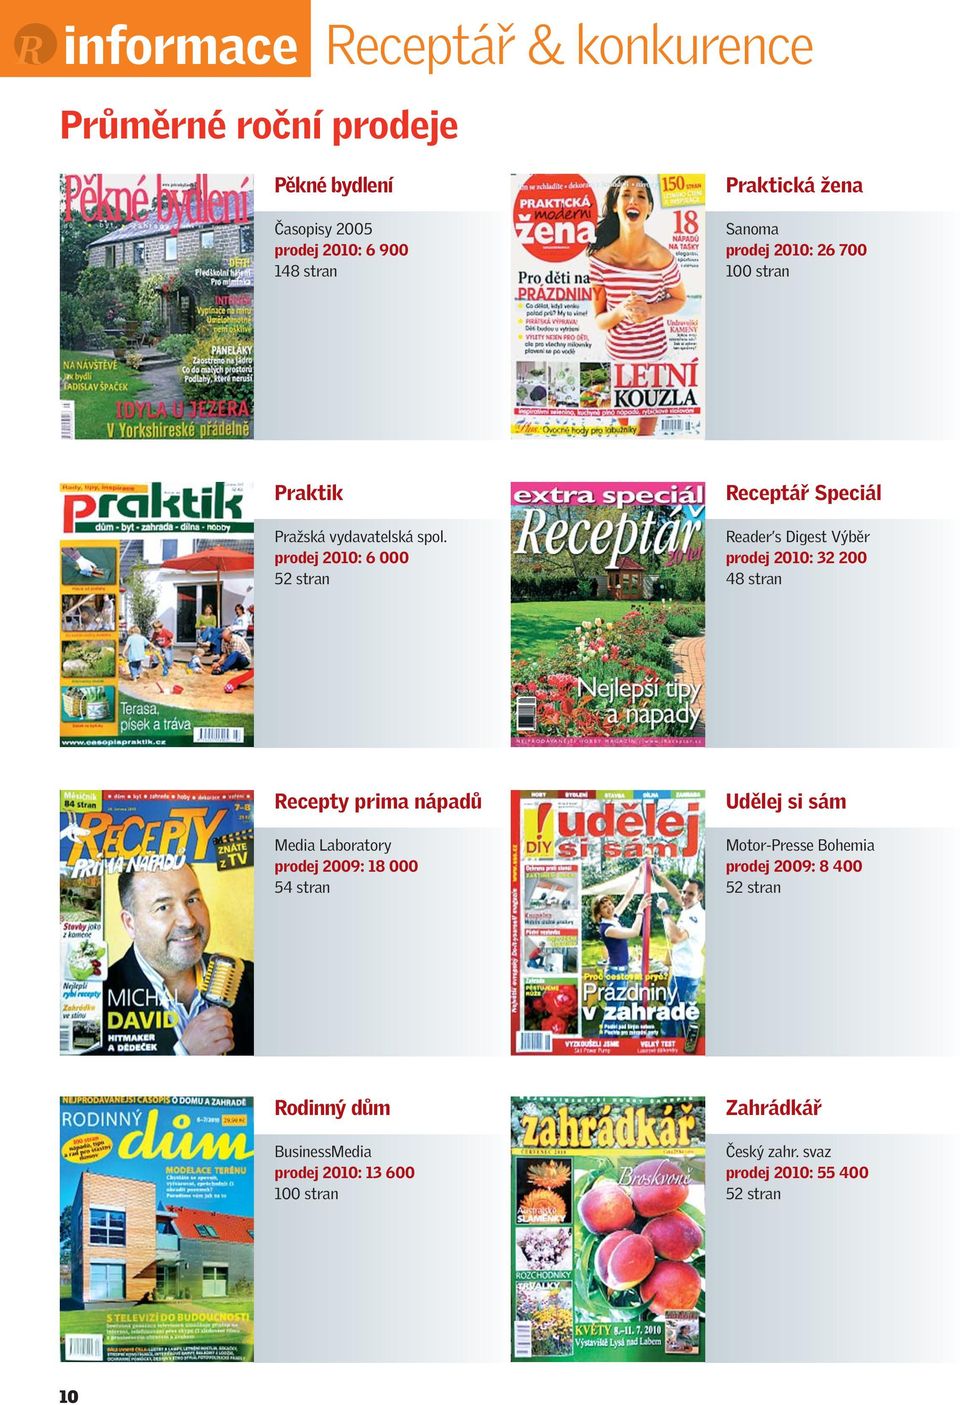 prodej 2010: 6 000 52 stran Speciál Reader s Digest Výběr prodej 2010: 32 200 48 stran Recepty prima nápadů Media Laboratory